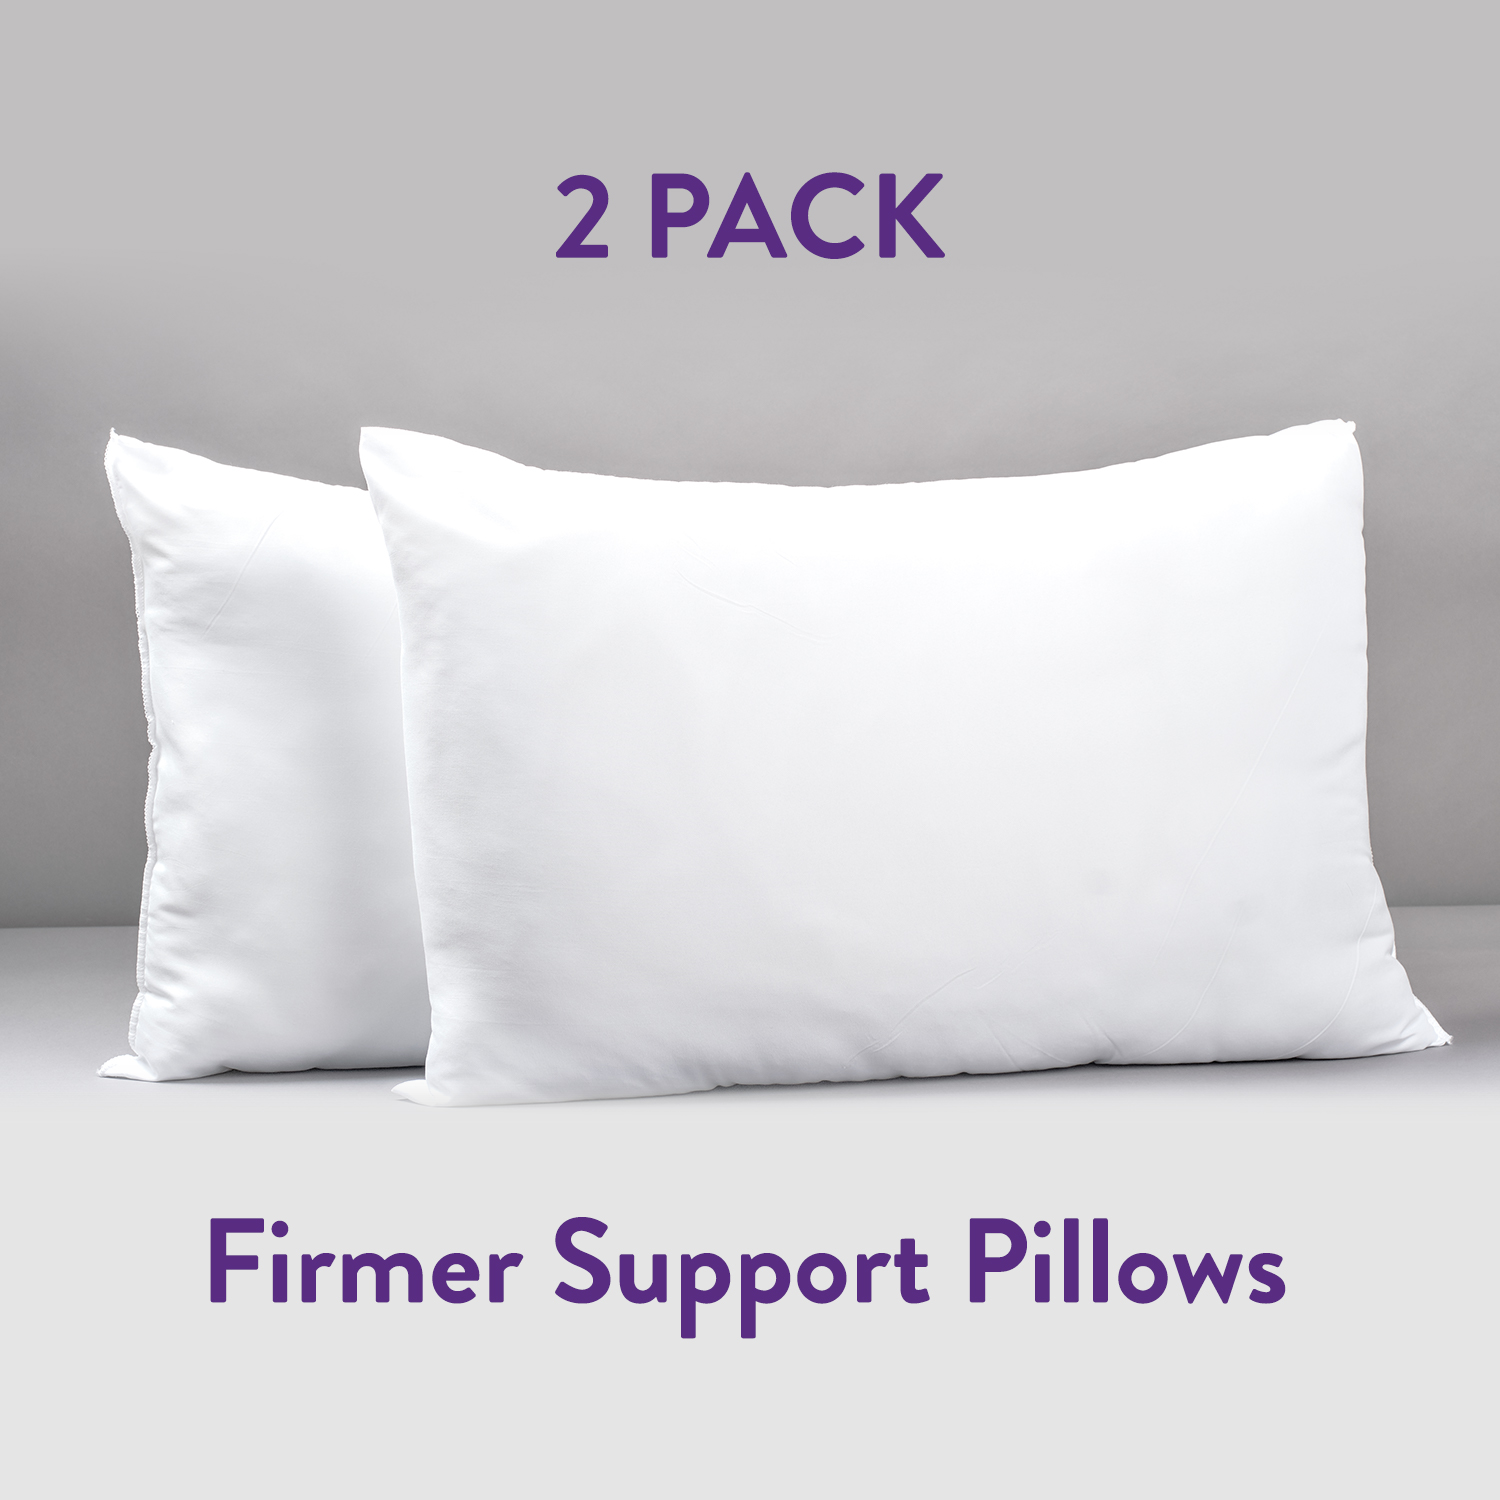 Super Support Firmer Pillows 2 Pack